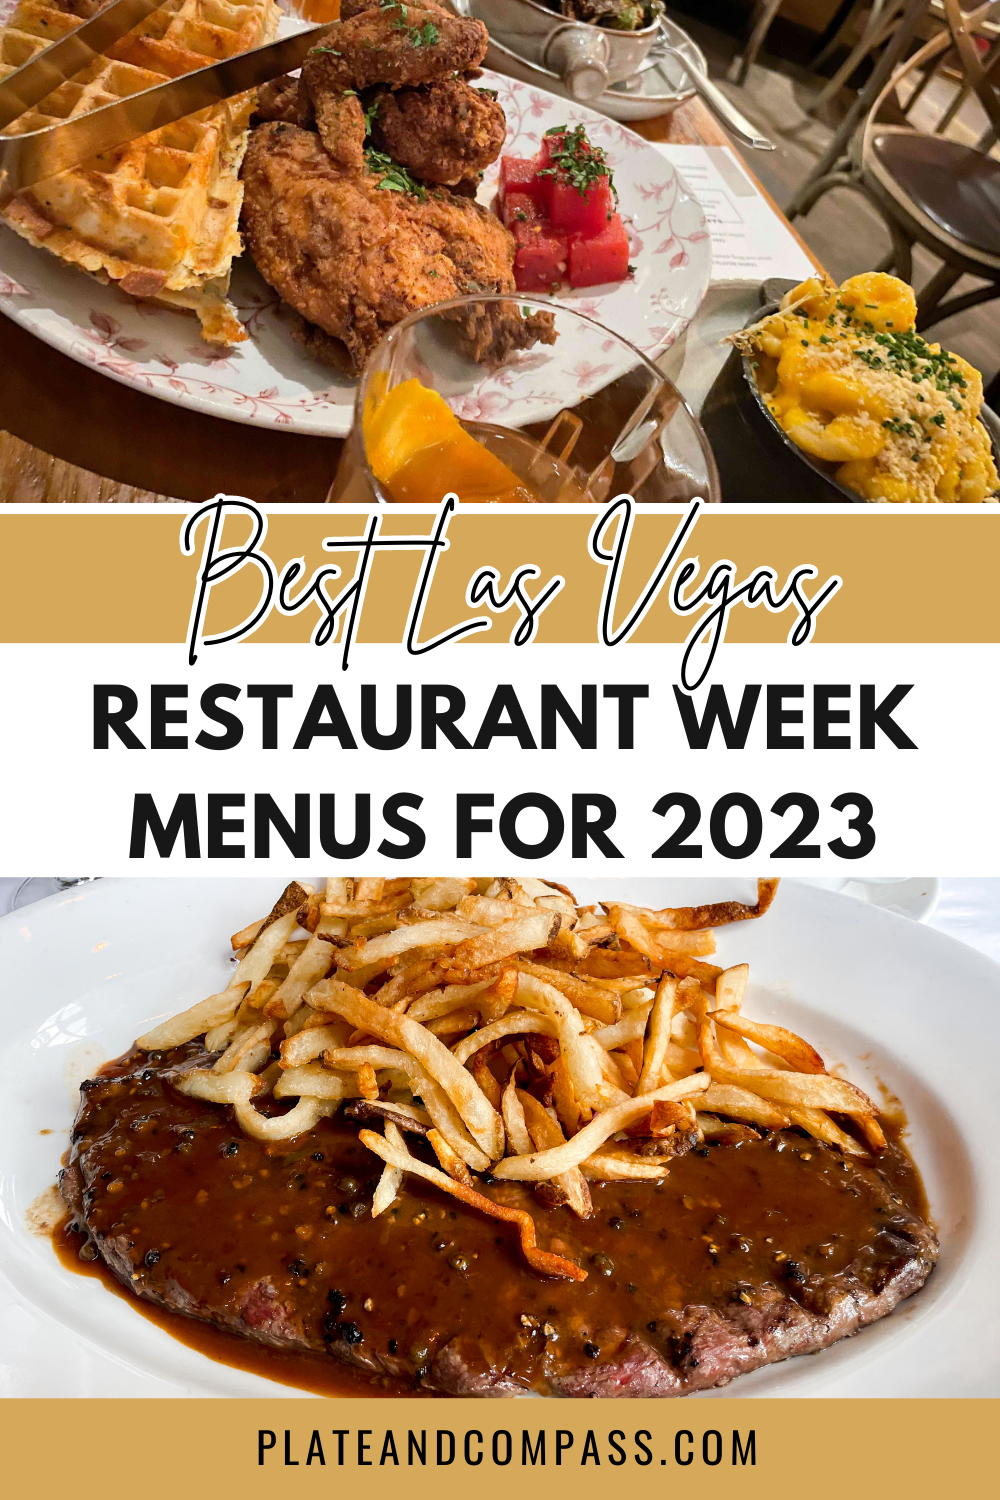 Best Last Vegas Restaurant Week Menus for 2023